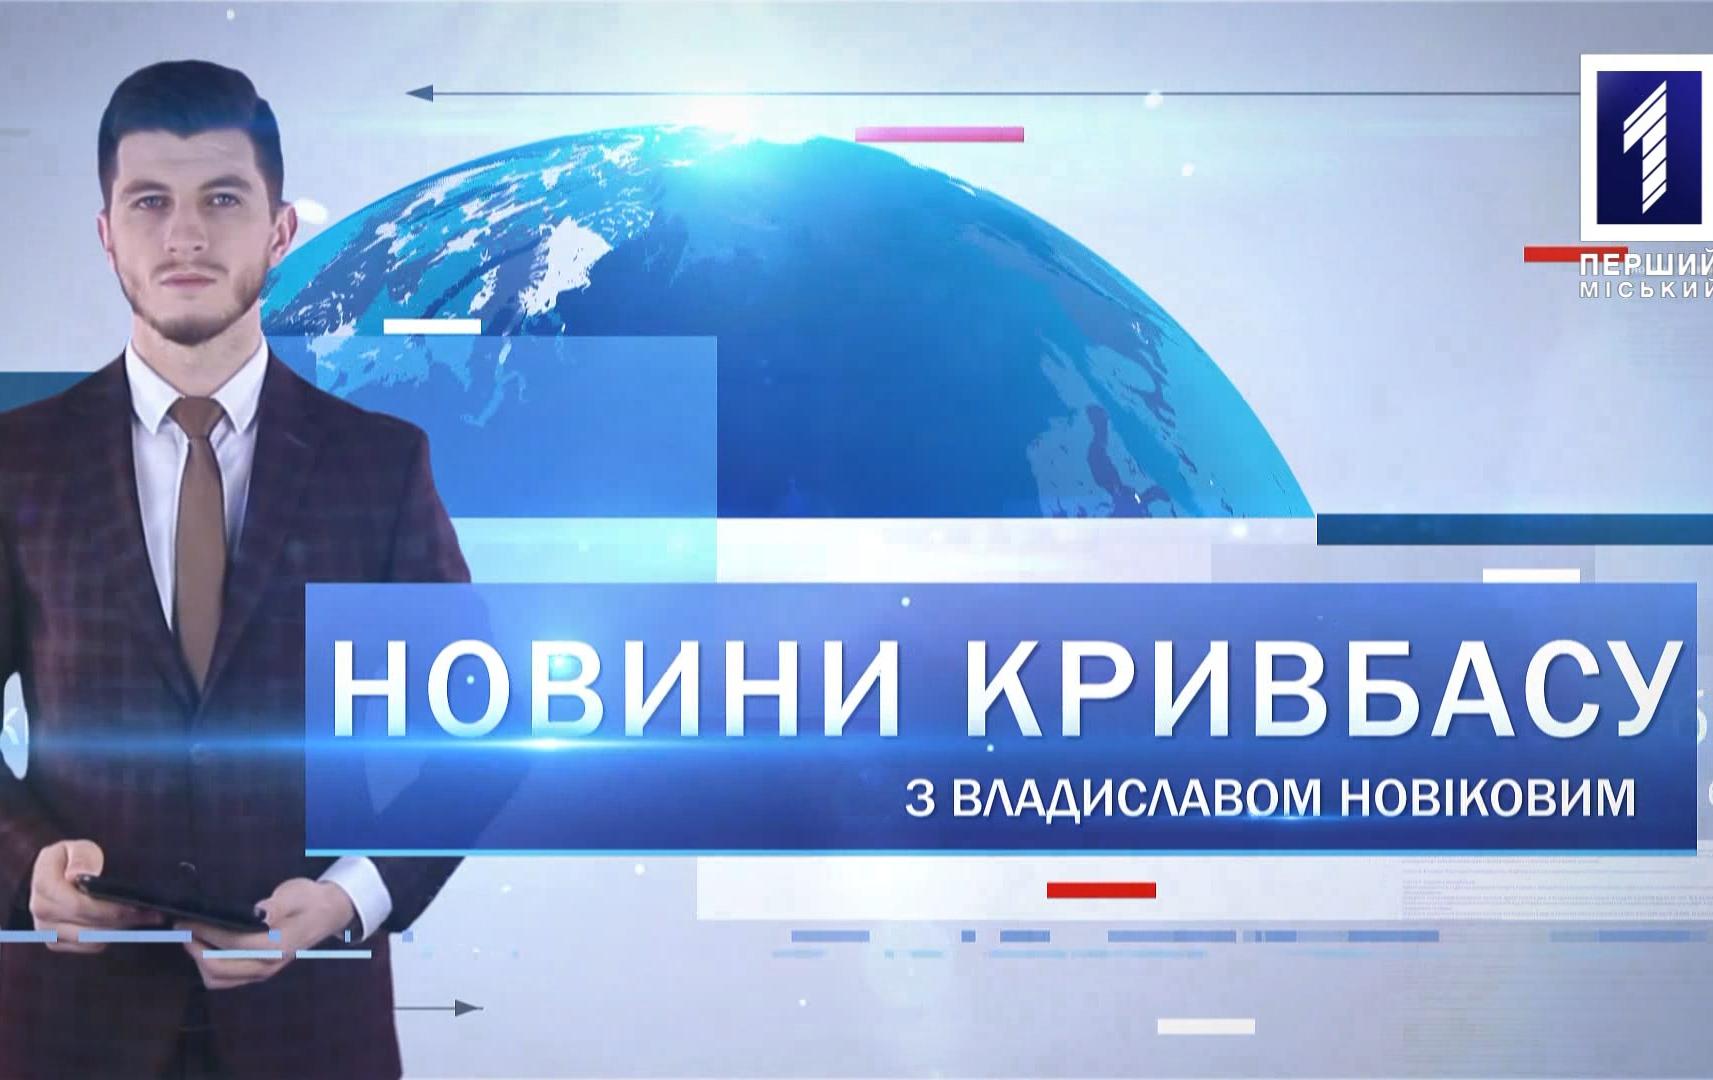 Новини Кривбасу 13 квітня 2020: зачинили лікарню, фестиваль «Артішок»